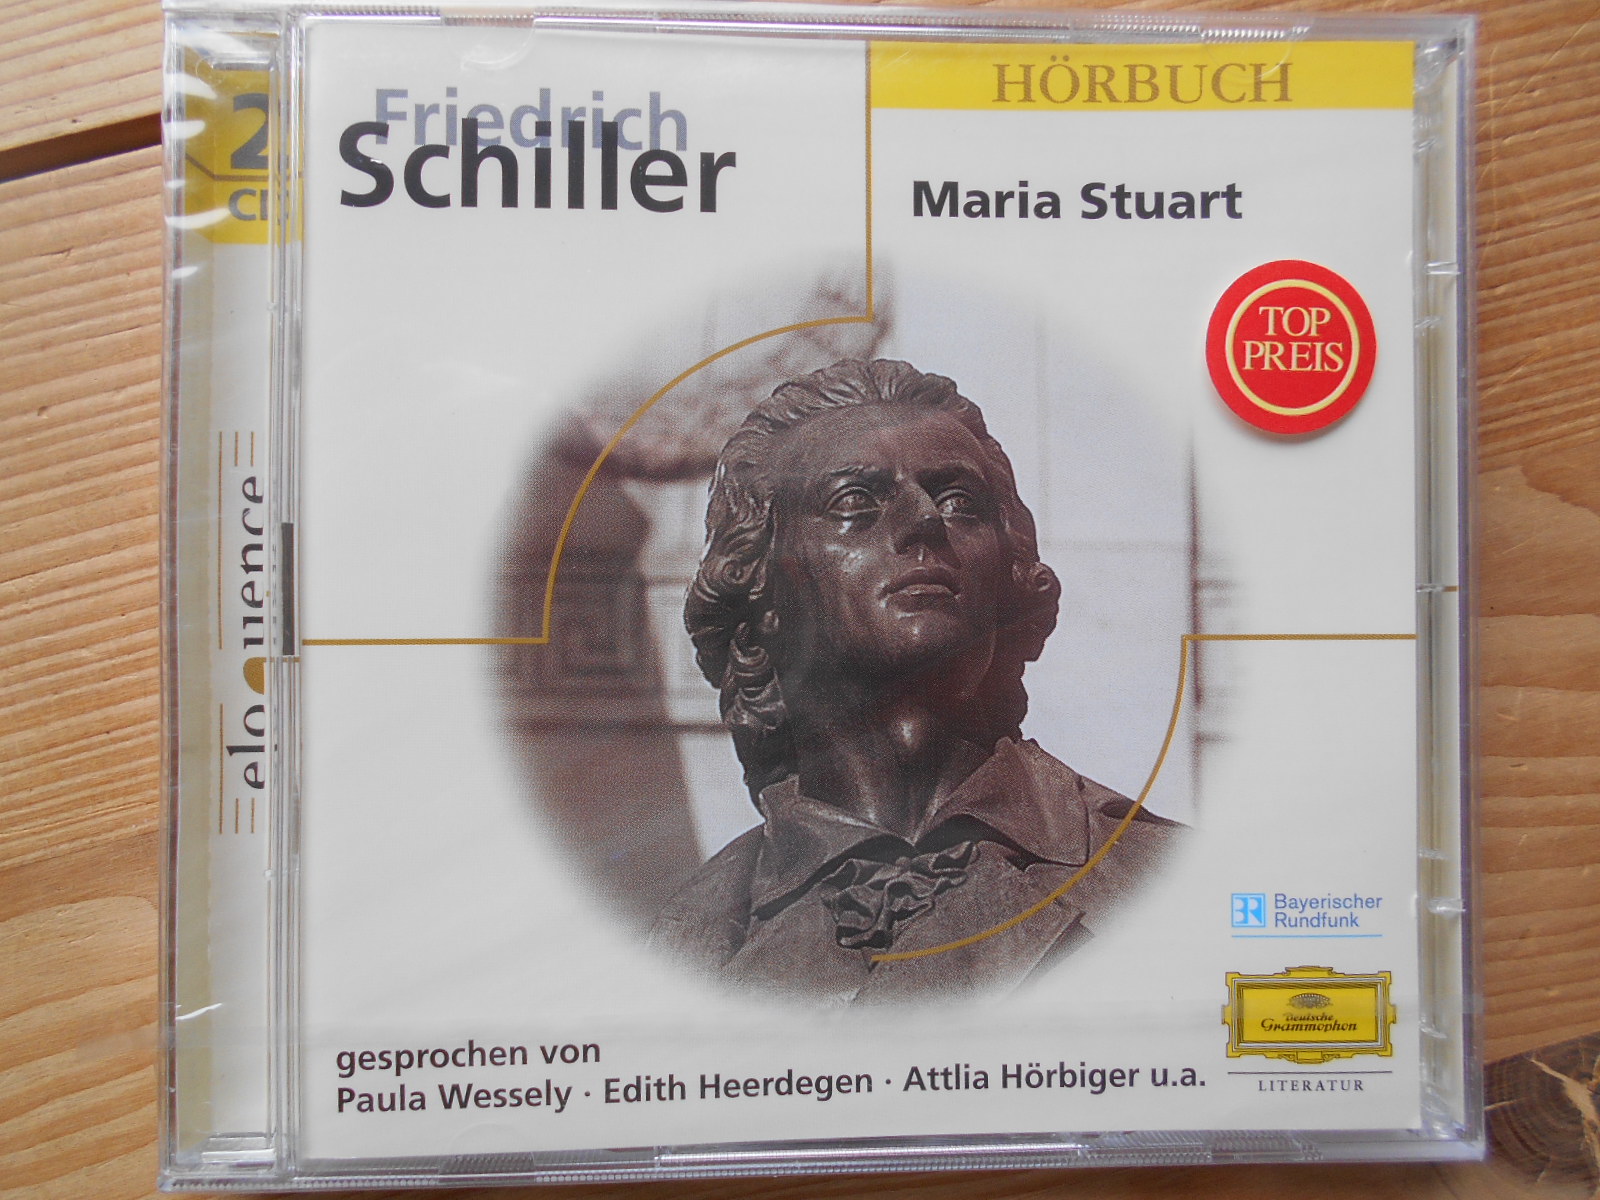 Friedrich Schiller : Maria Stuart  9869419 - Wessely, Paula, Edith Heerdegen Attila Hörbiger u. a.